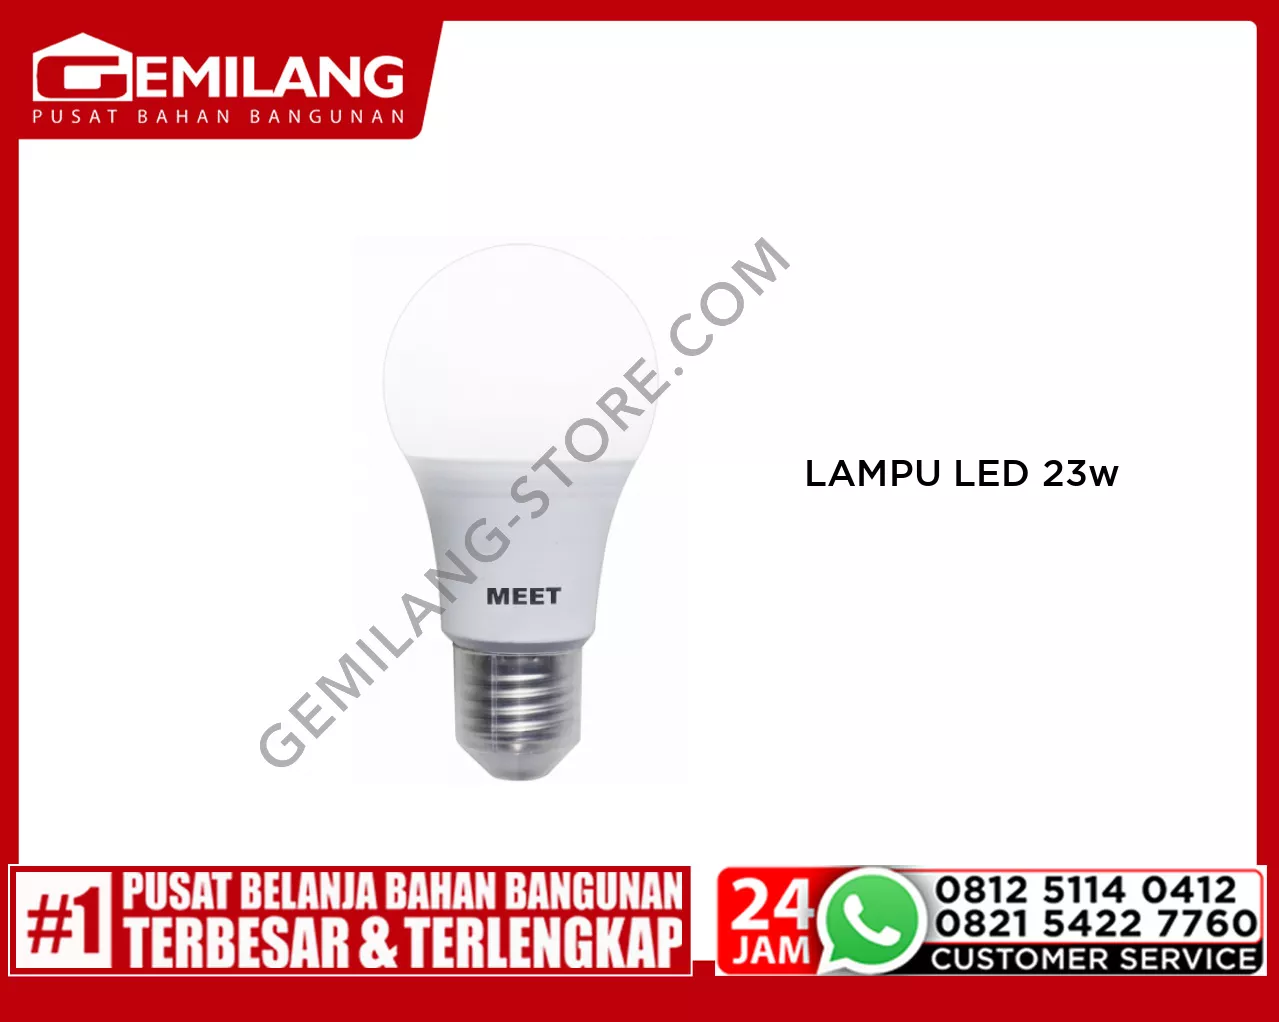 MEET LAMPU LED CLASSIC 23w